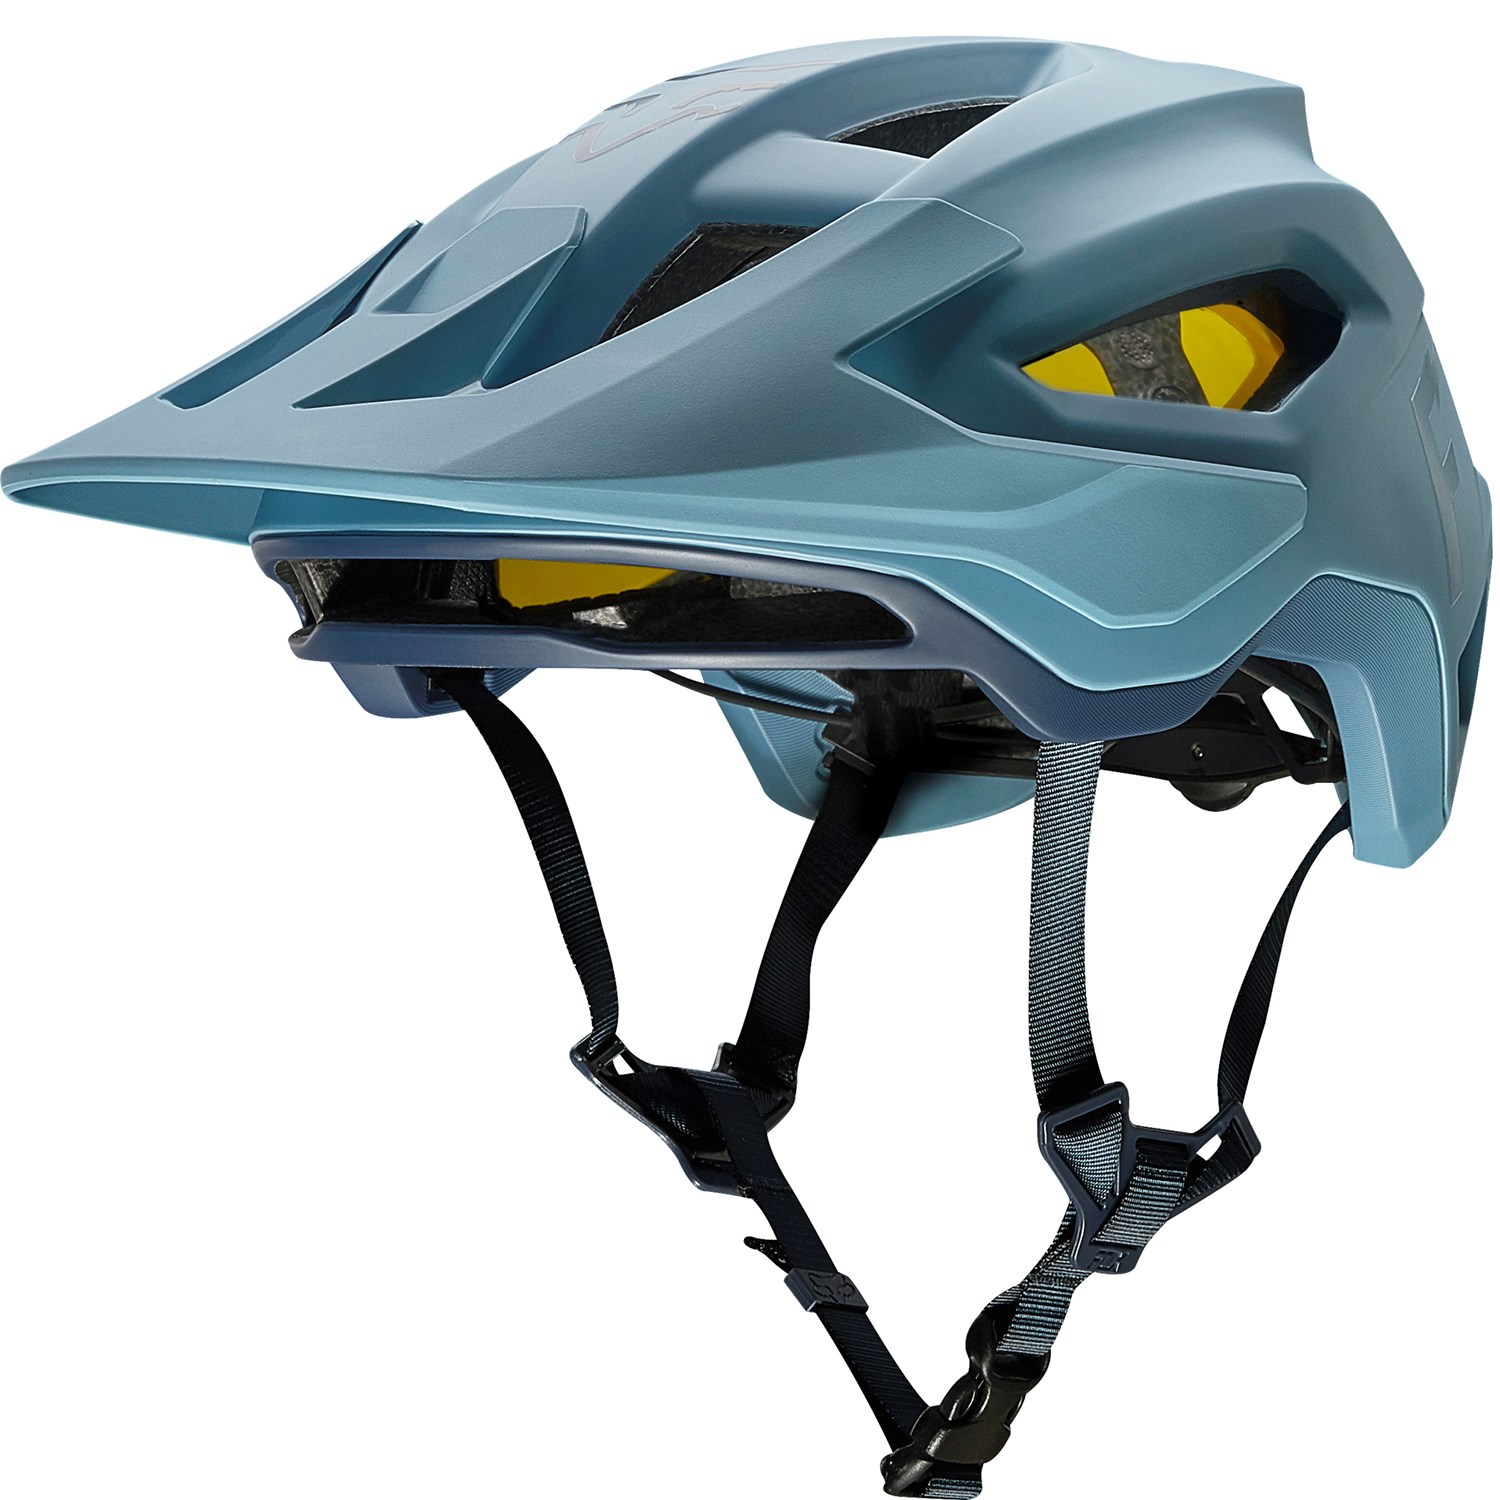 teal bike helmet